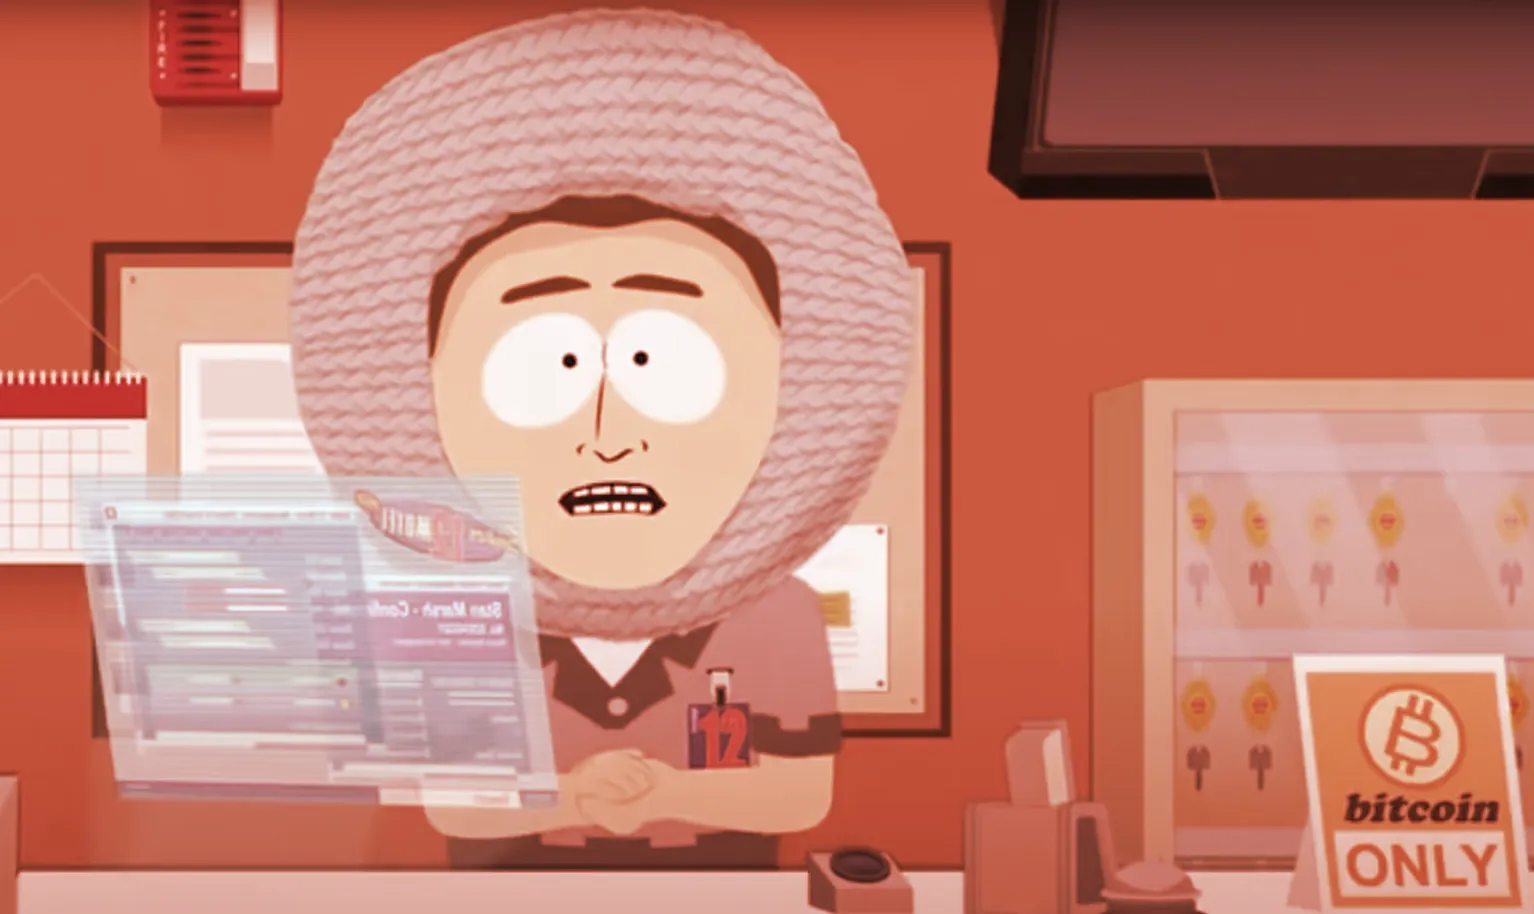 South Park adopta una postura crítica con el Bitcoin en un episodio reciente.